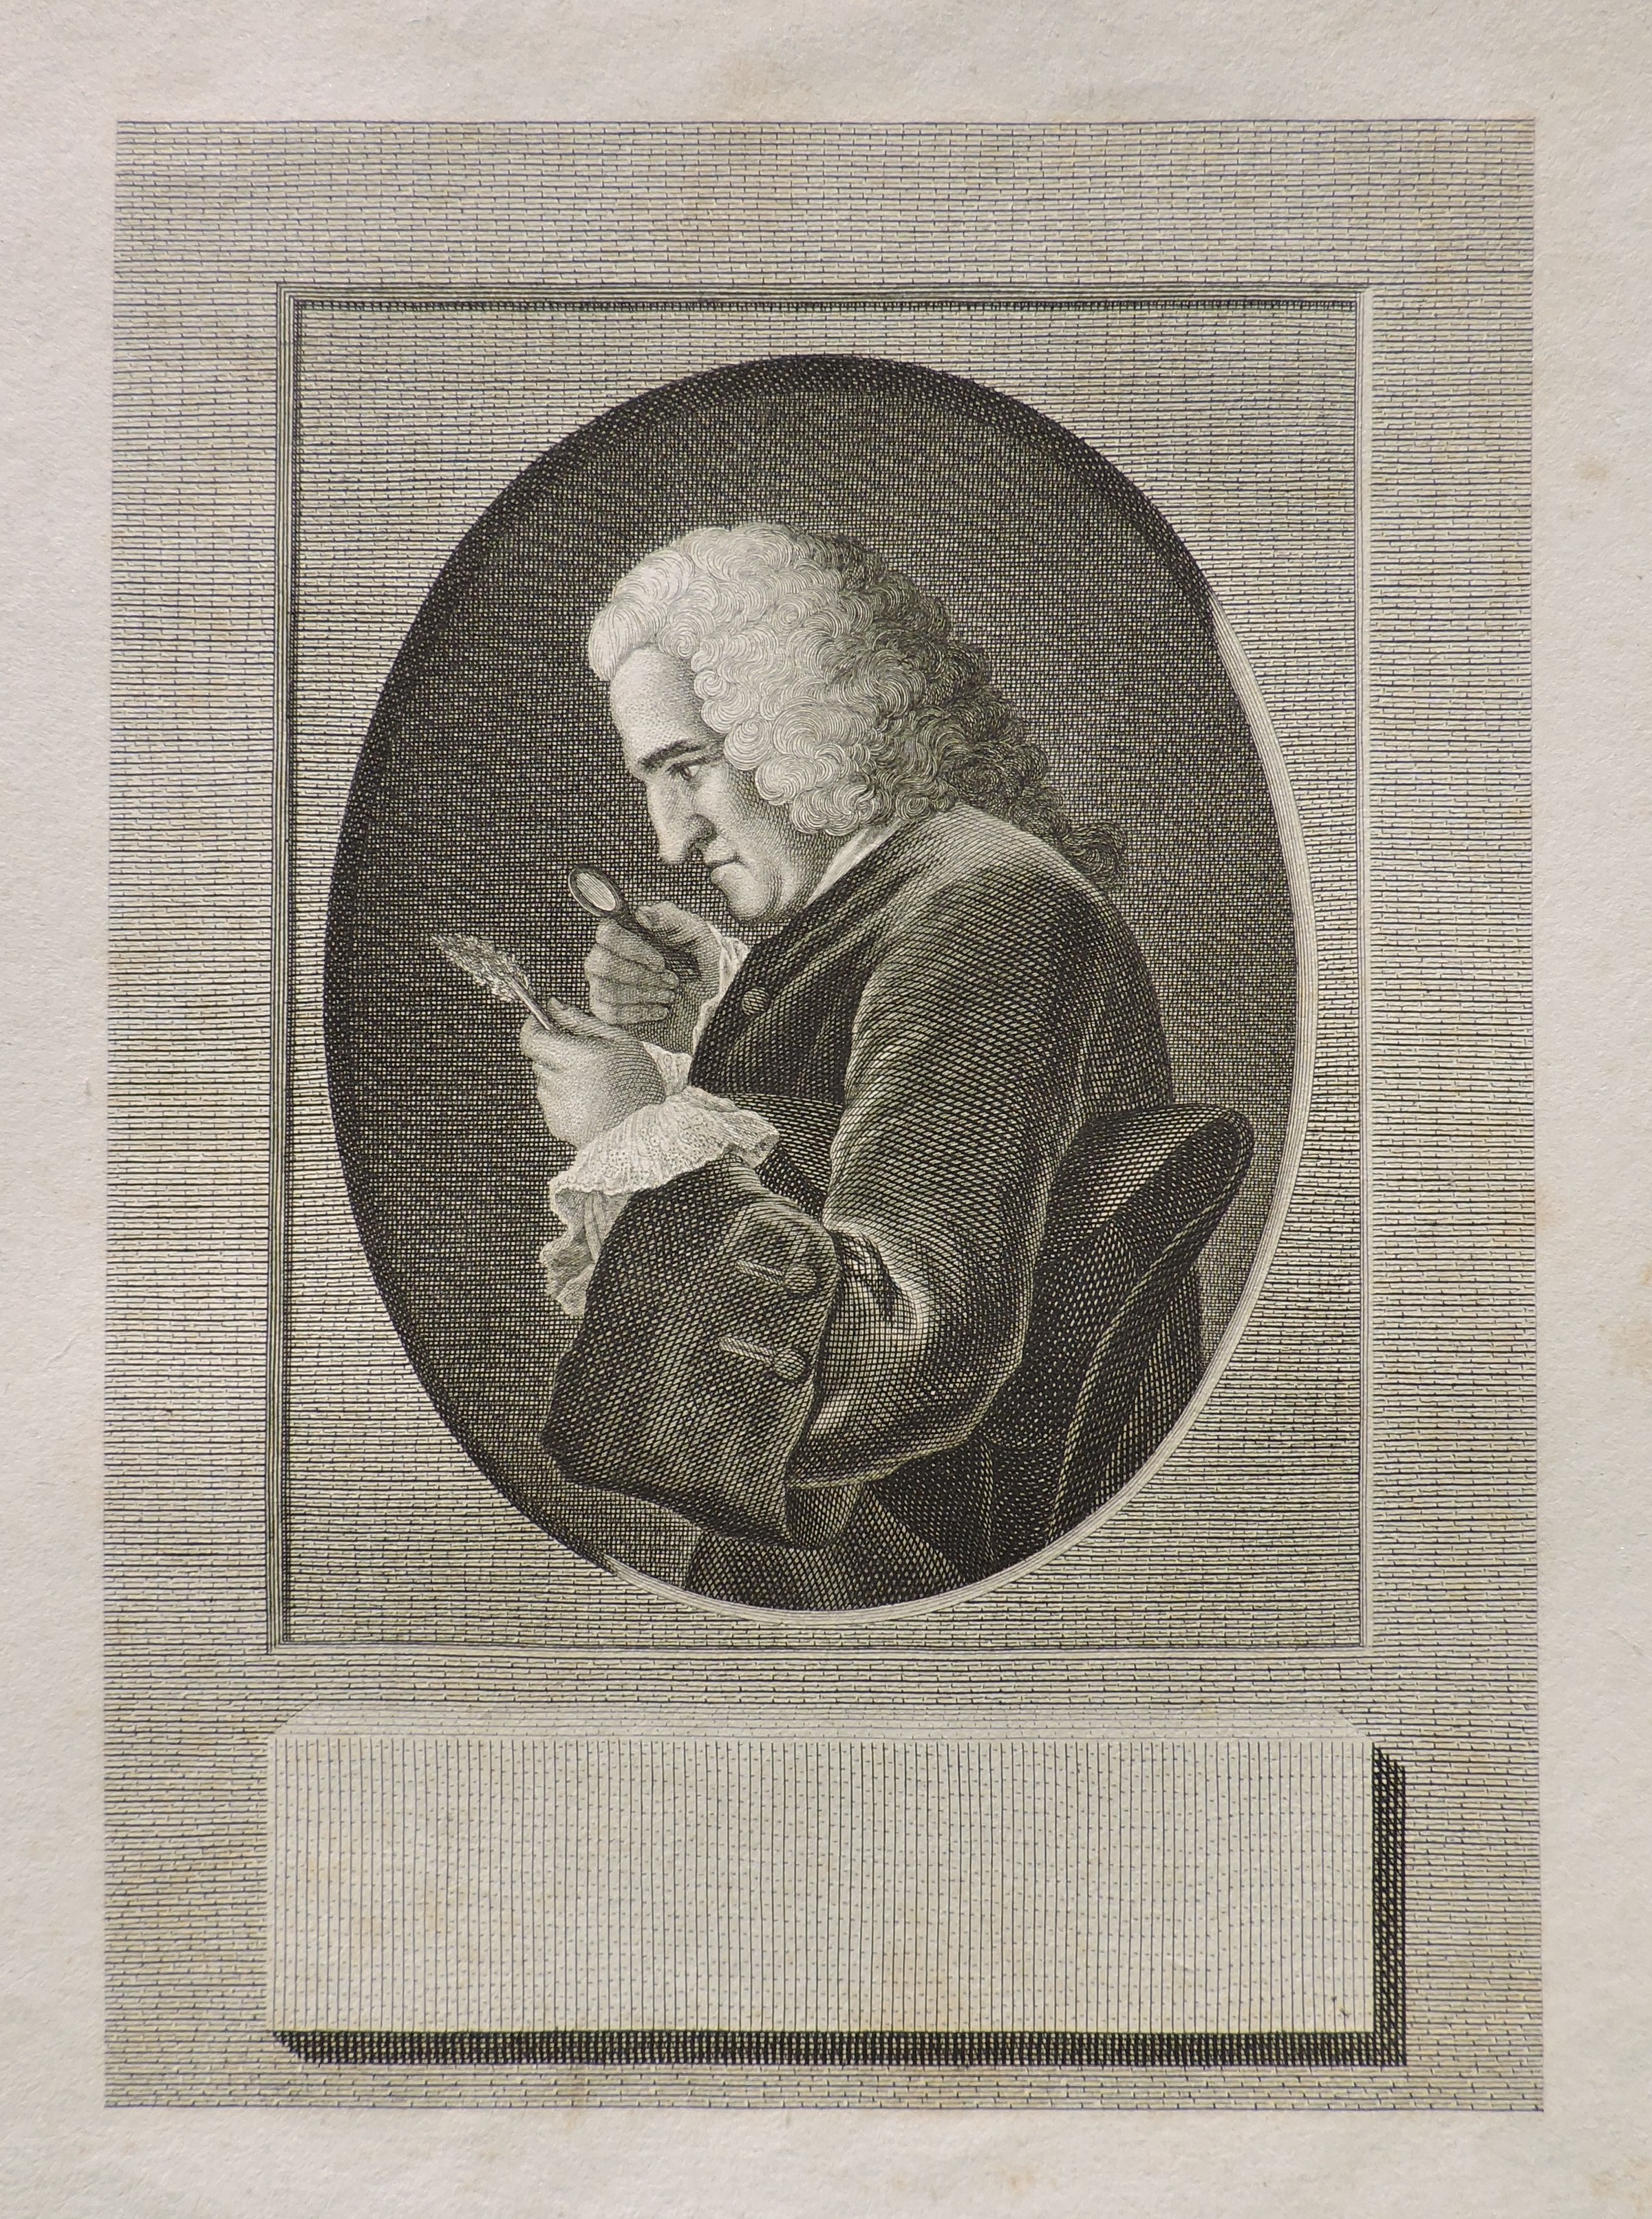 Bernard de Jussieu